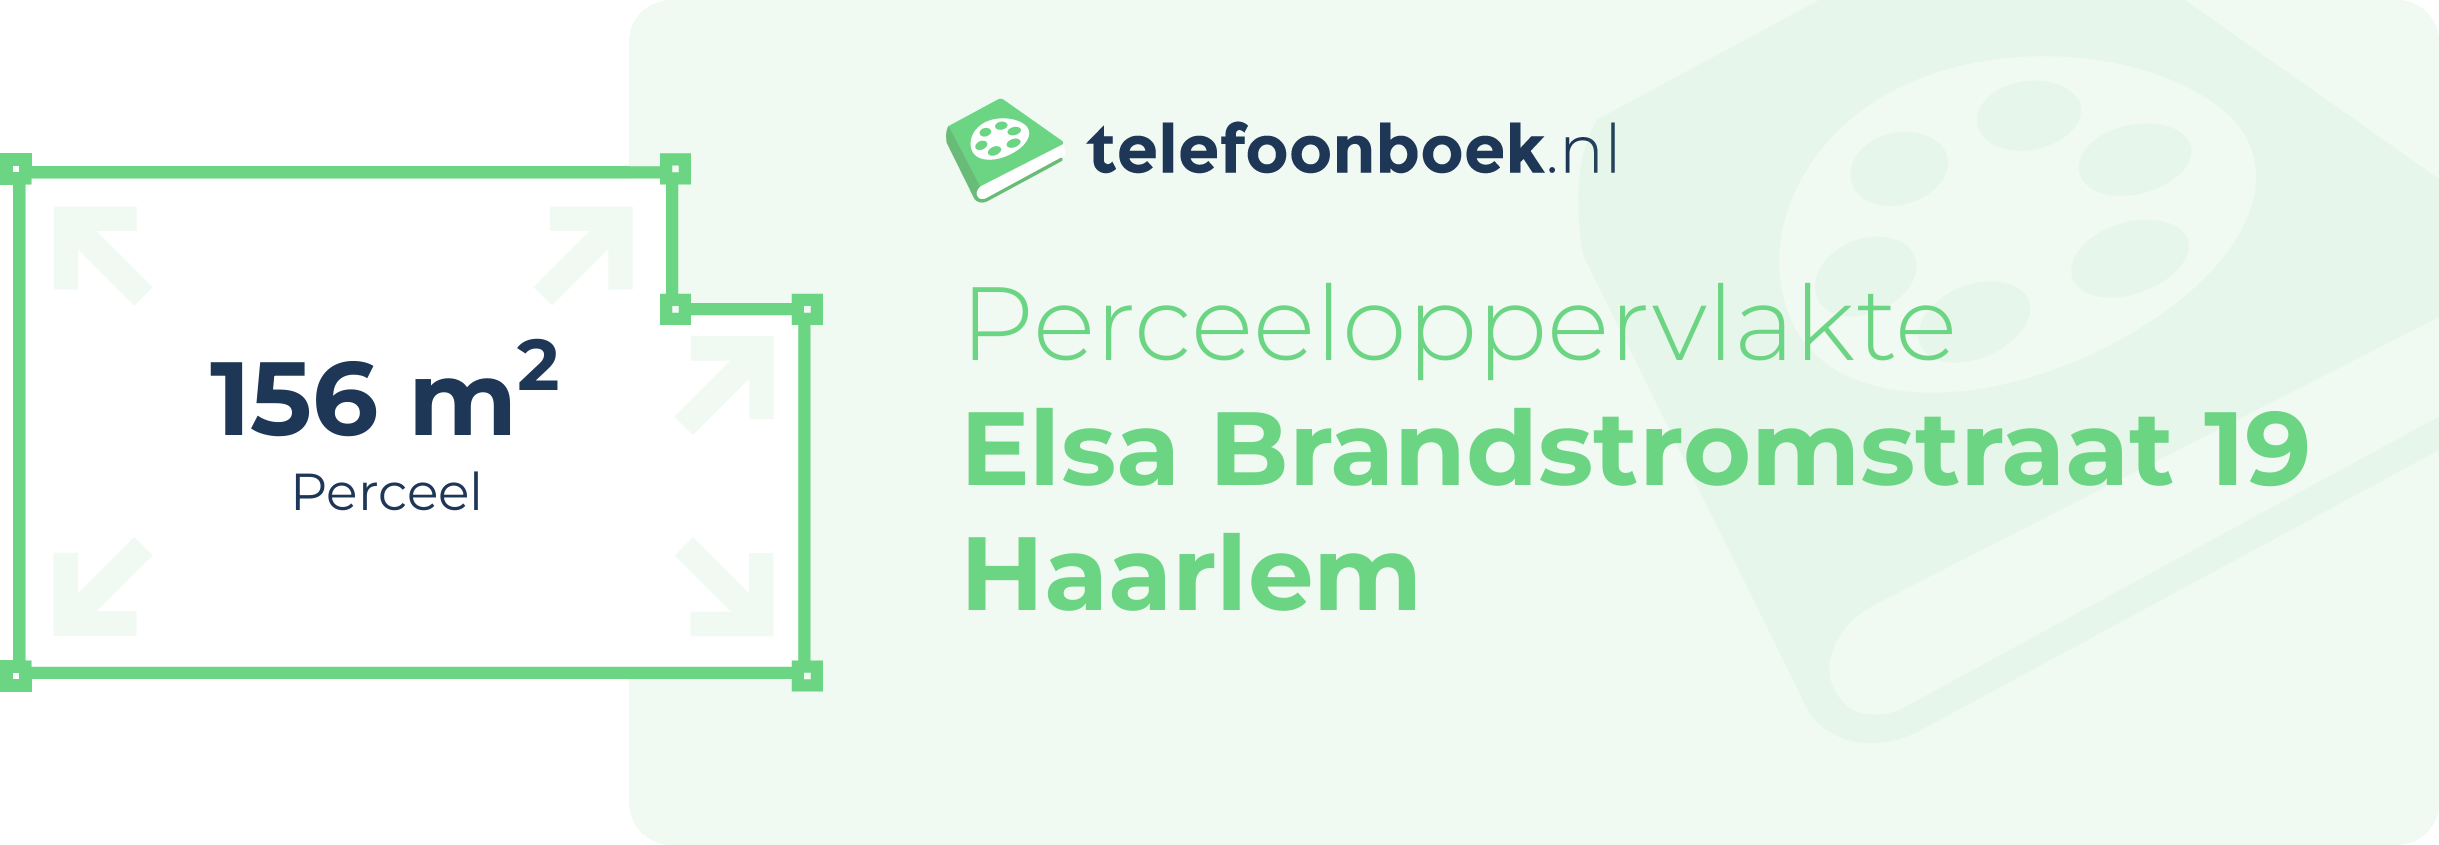 Perceeloppervlakte Elsa Brandstromstraat 19 Haarlem